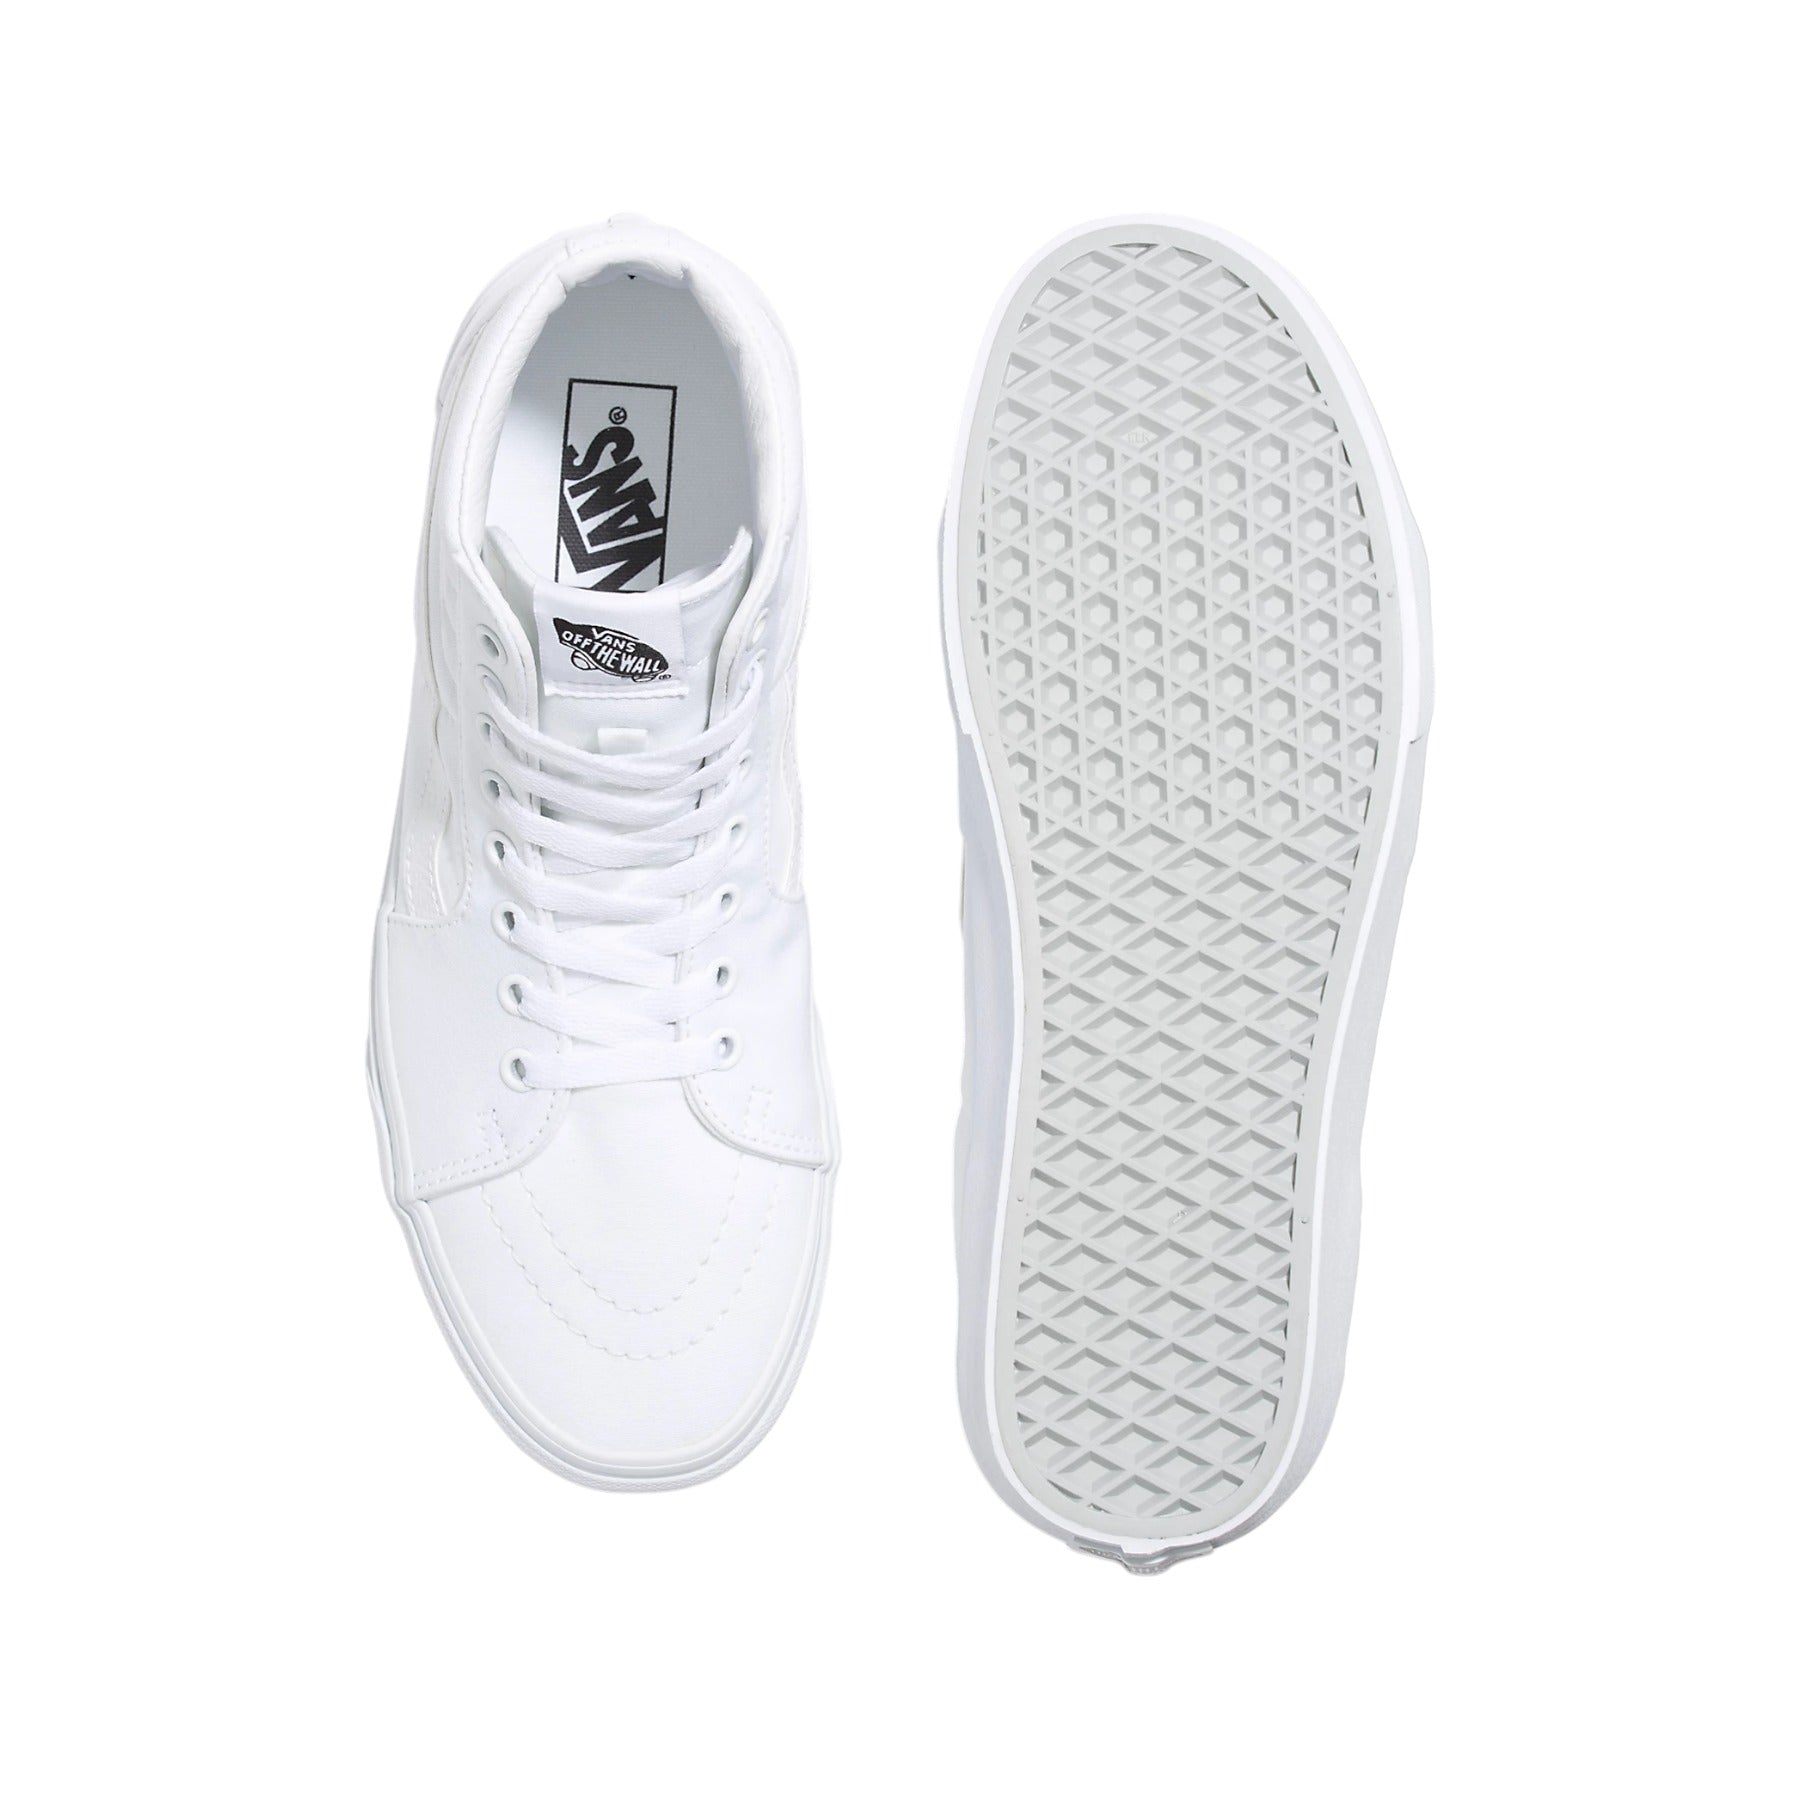 Vans SK8-Hi Shoes - True White